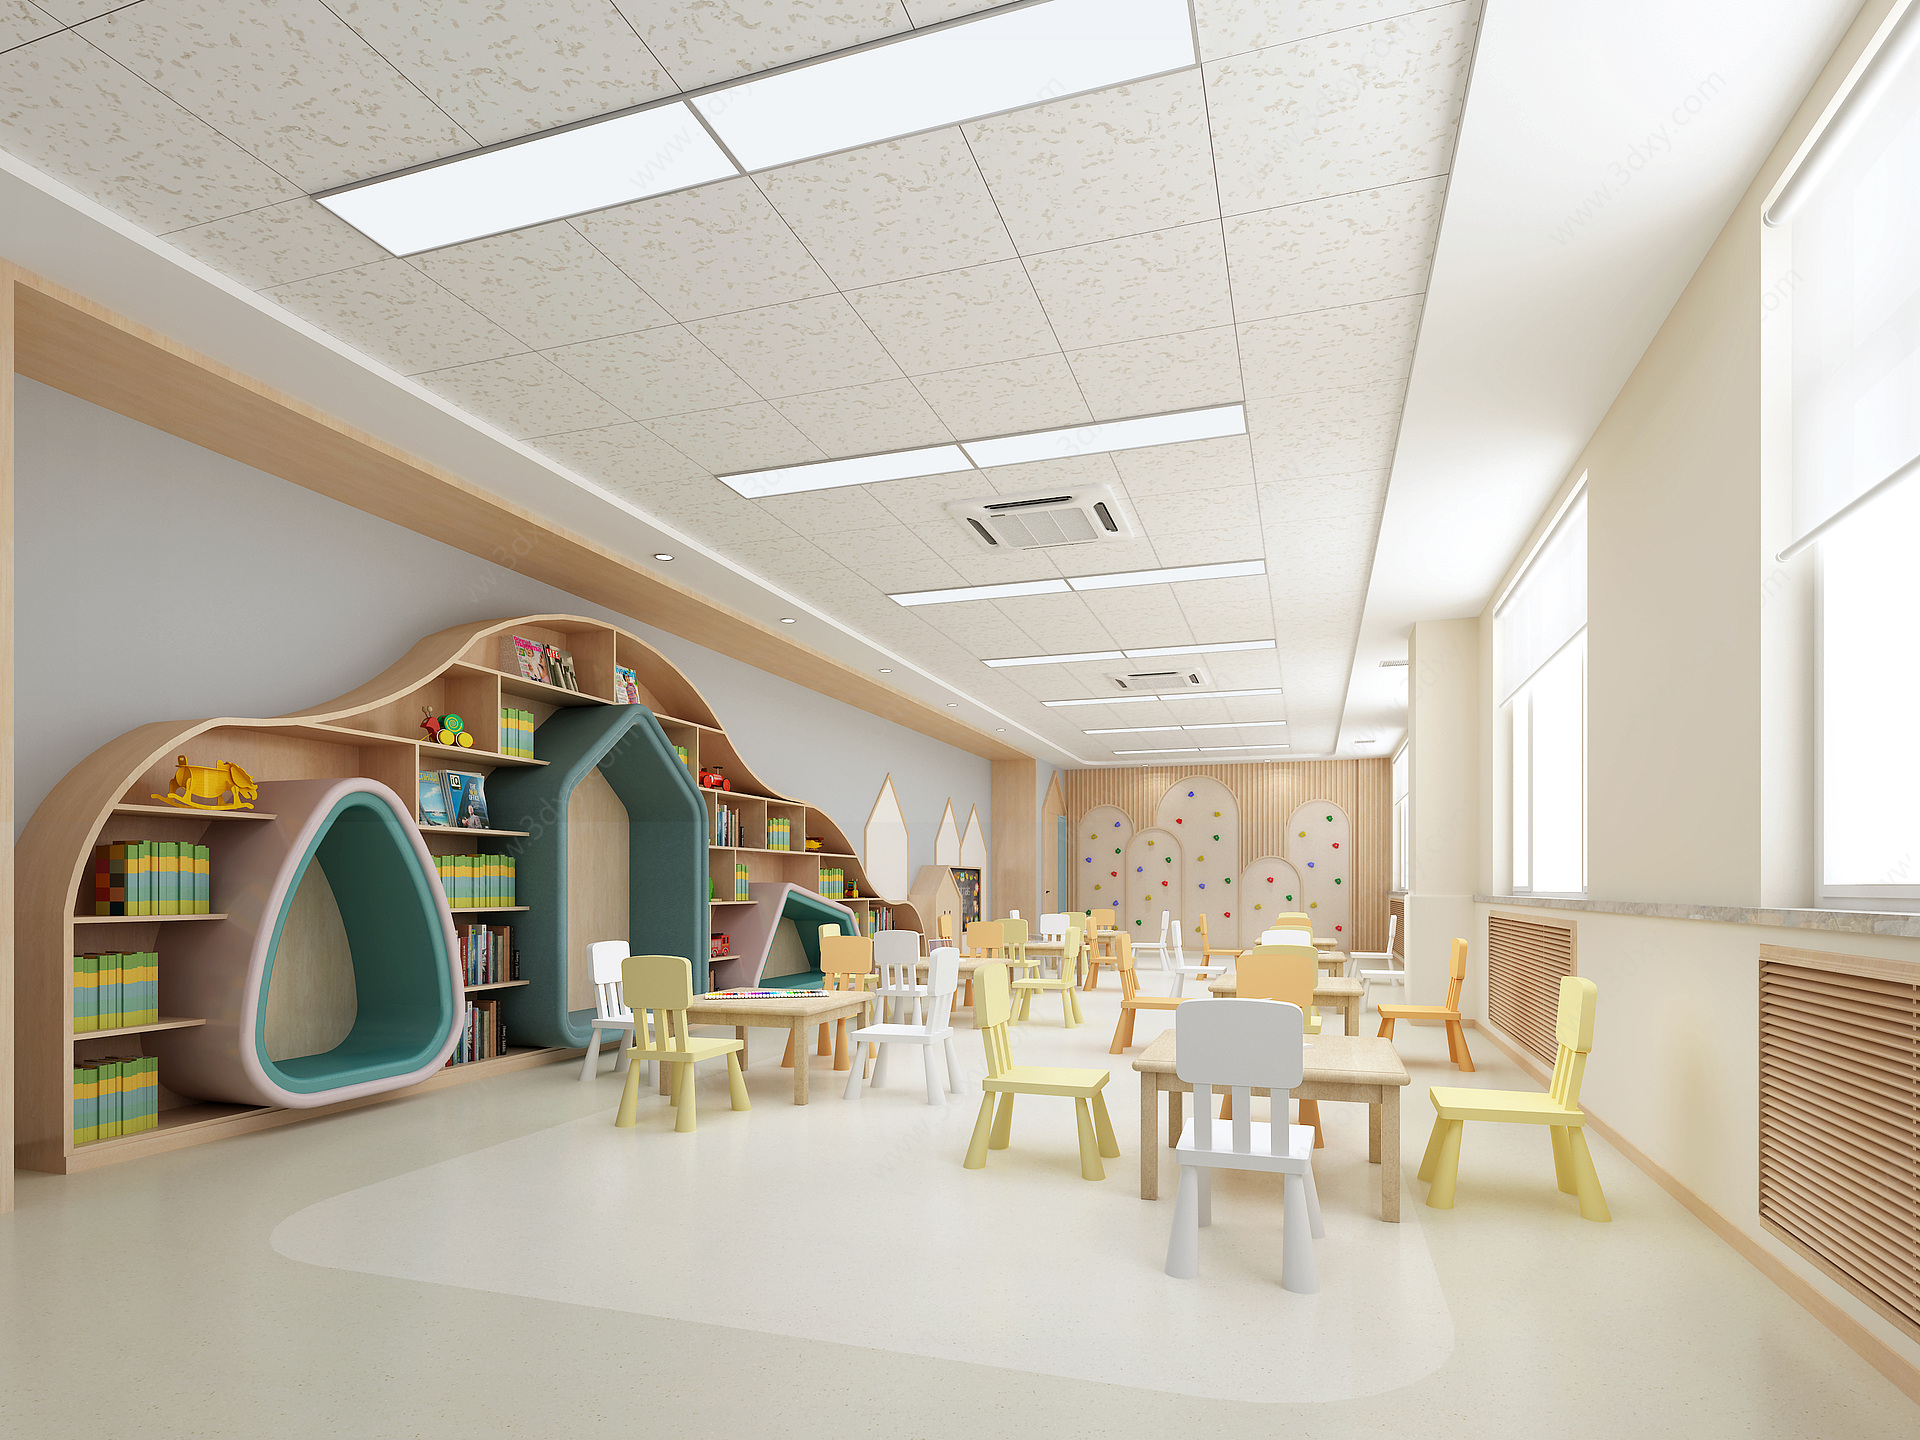 现代幼儿园活动室3D模型